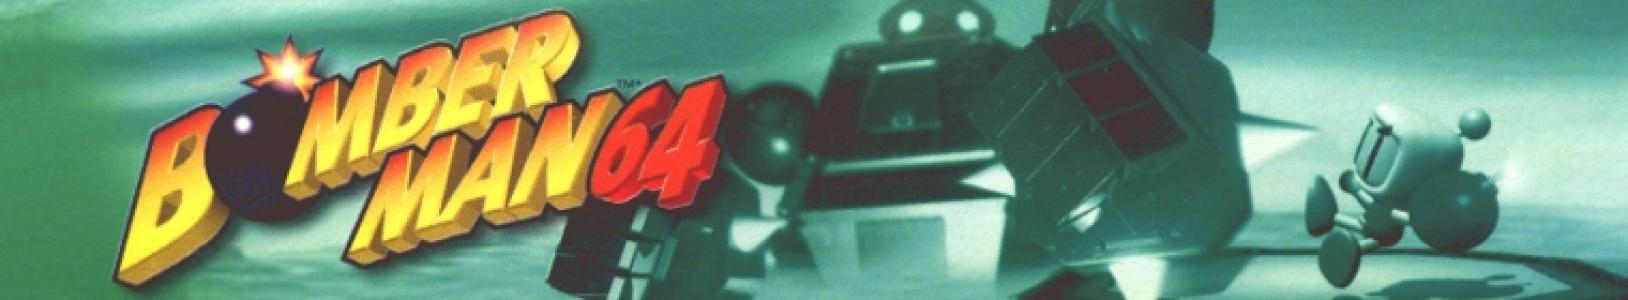 Bomberman 64 banner